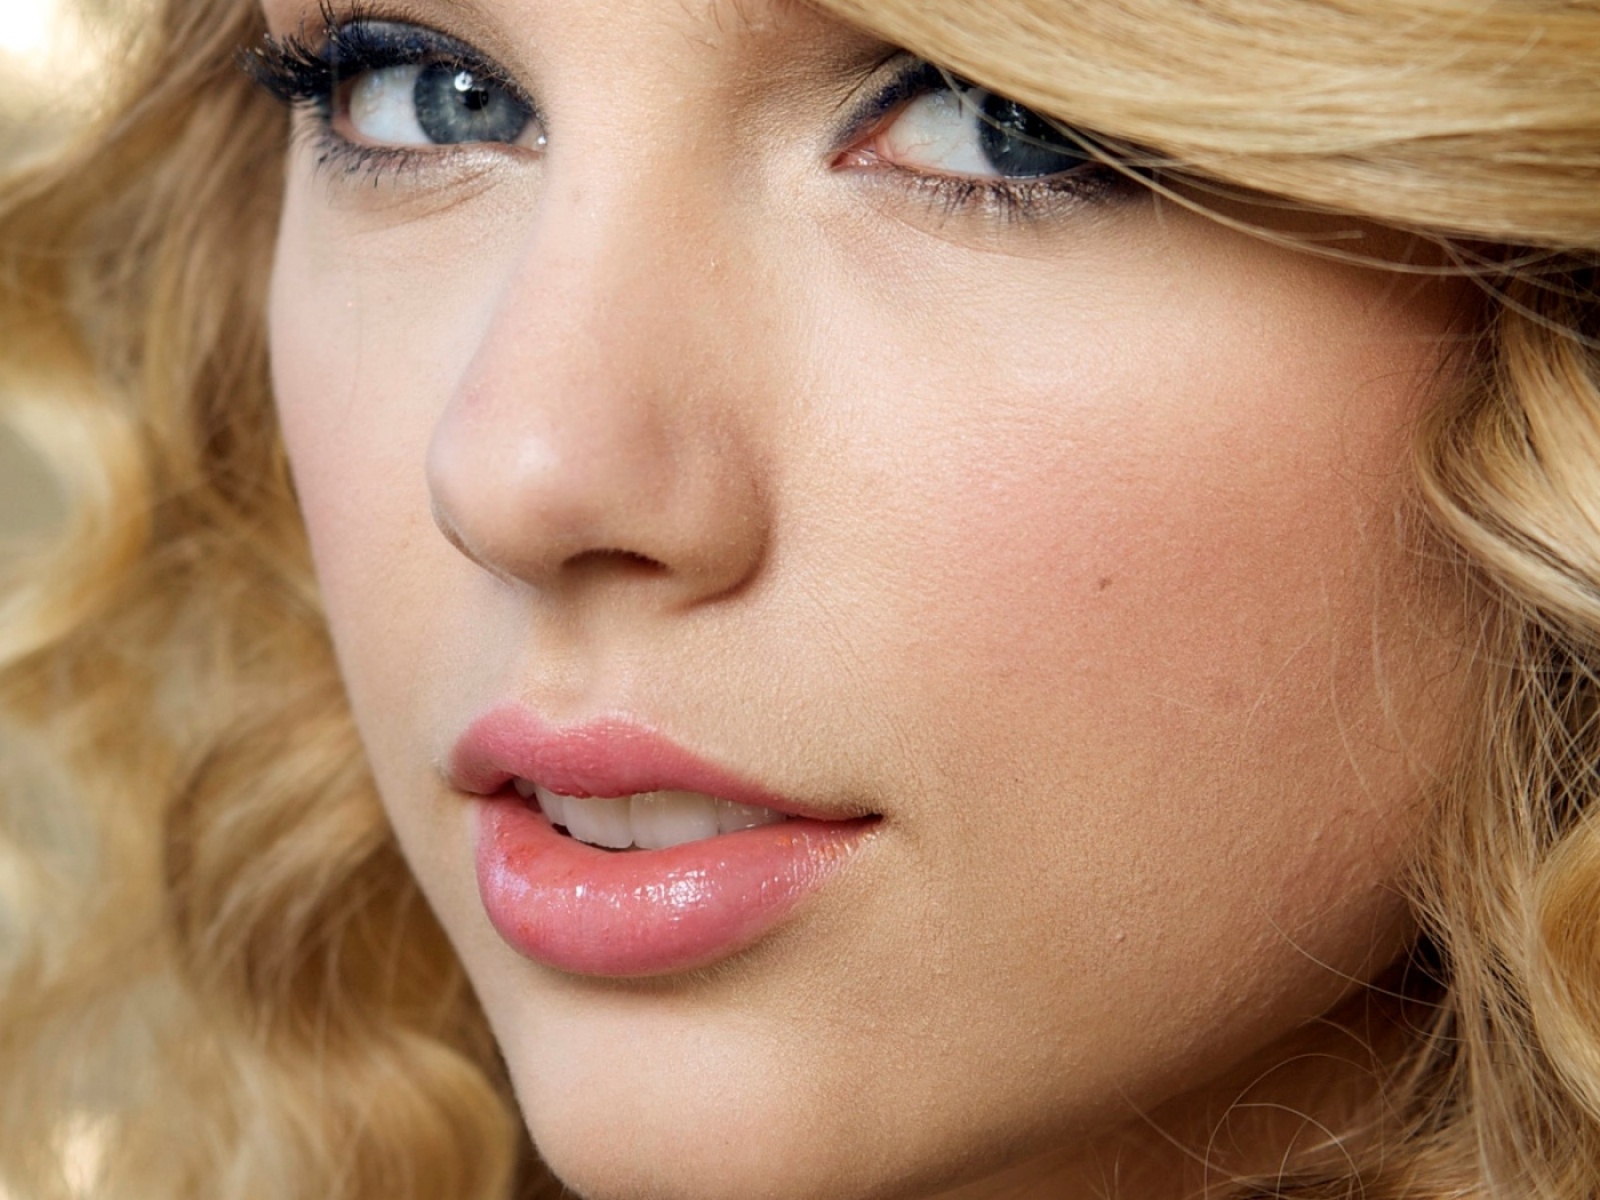 Taylor Swift Closeup Wallpaper Stock Photos